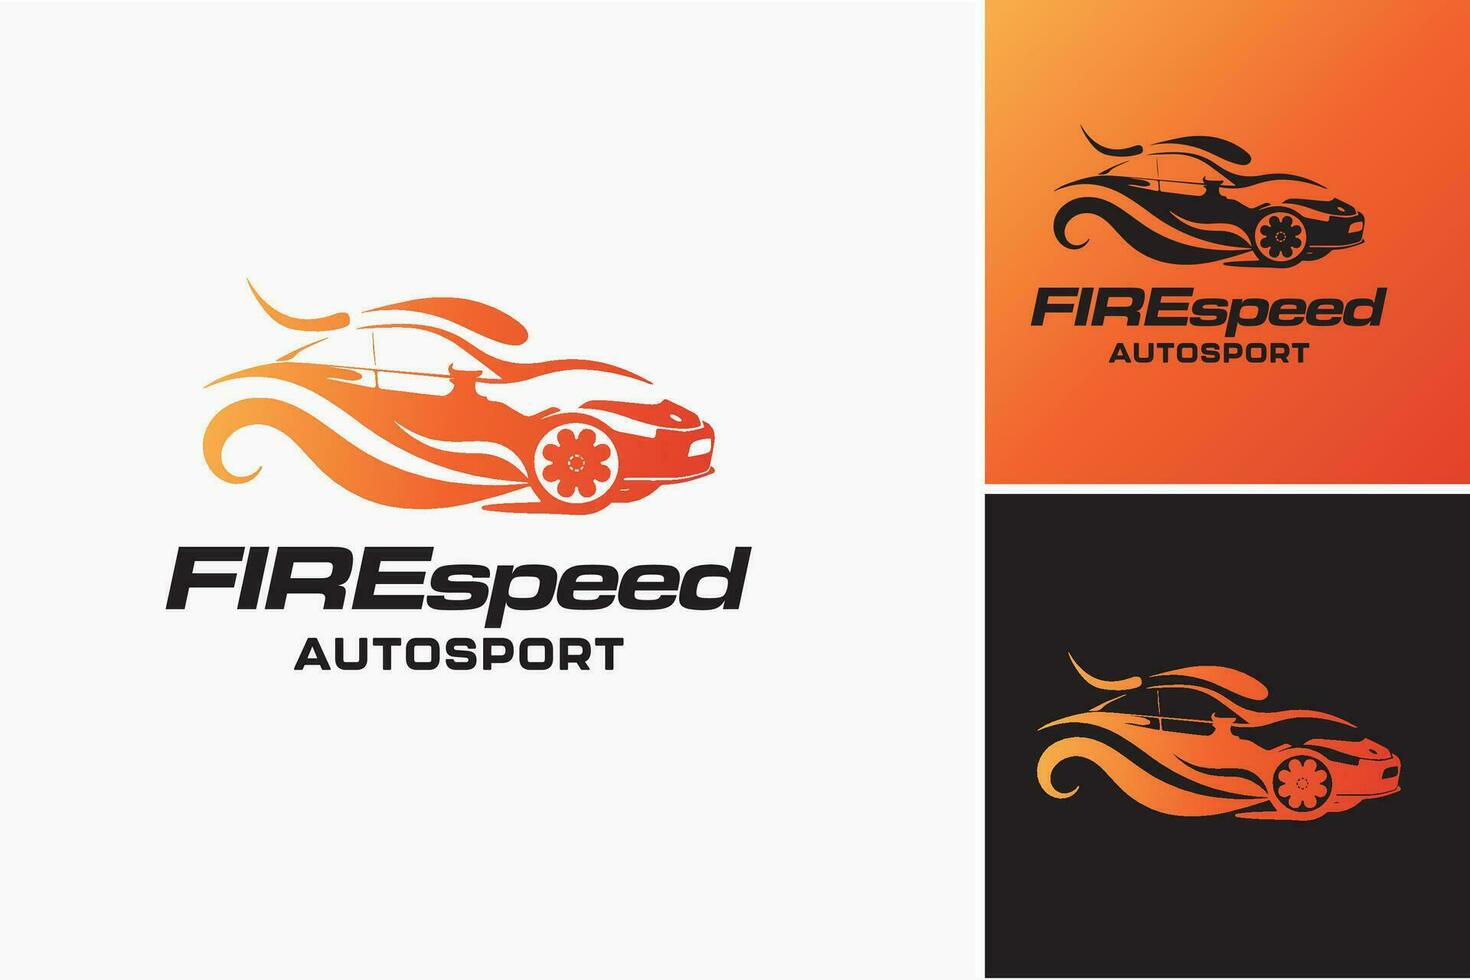 das Logo zum das feuerbetrieben Auto ist ein dynamisch und visuell auffällig Design Anlagegut geeignet zum Automobil Unternehmen oder Marken spezialisieren im feuerbetrieben Fahrzeuge. vektor